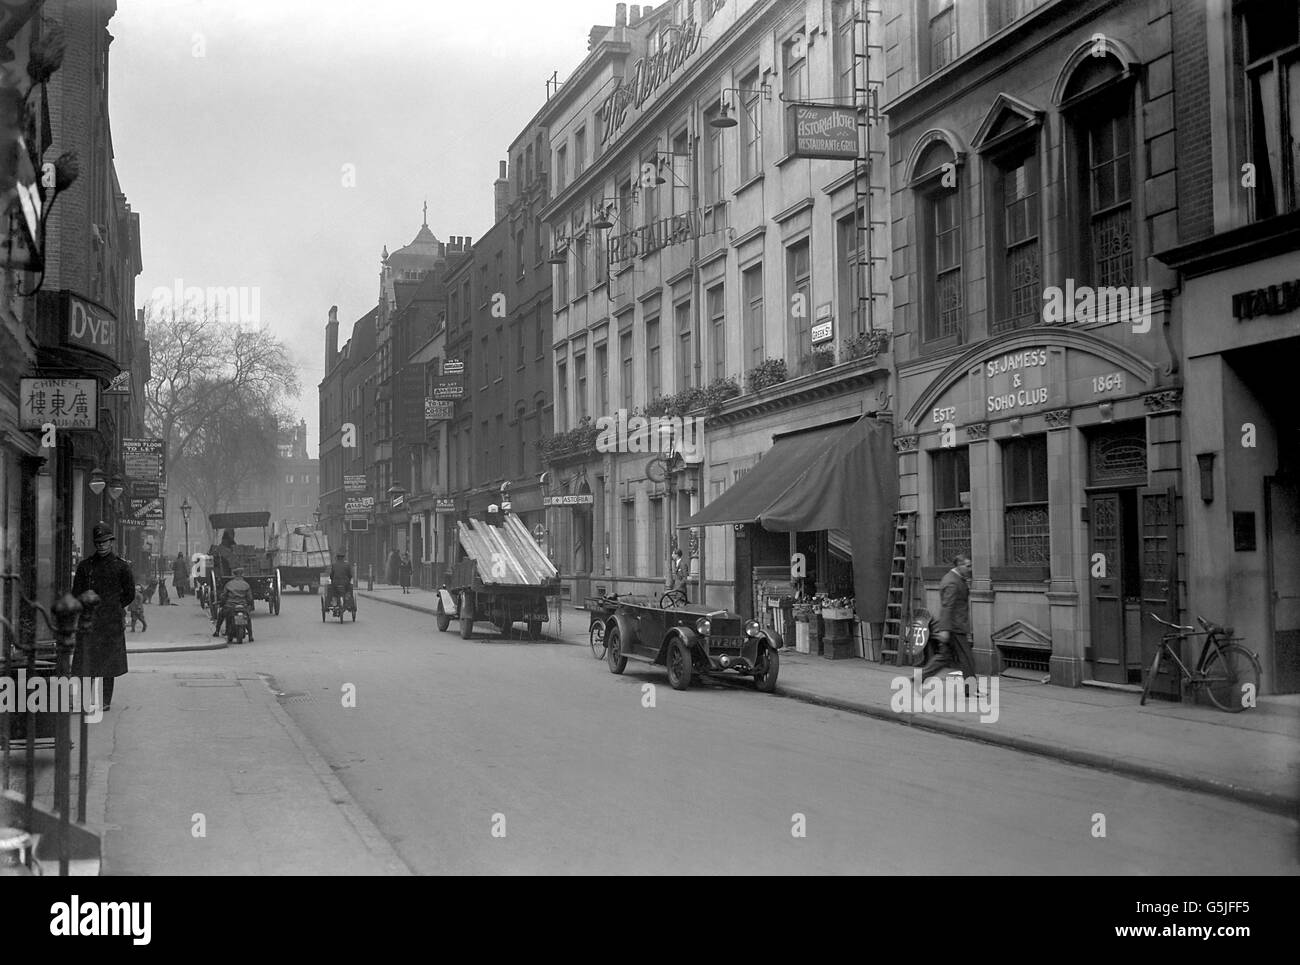 London - Greek Street 1932. A view of Greek Street in London's Soho. Stock Photo